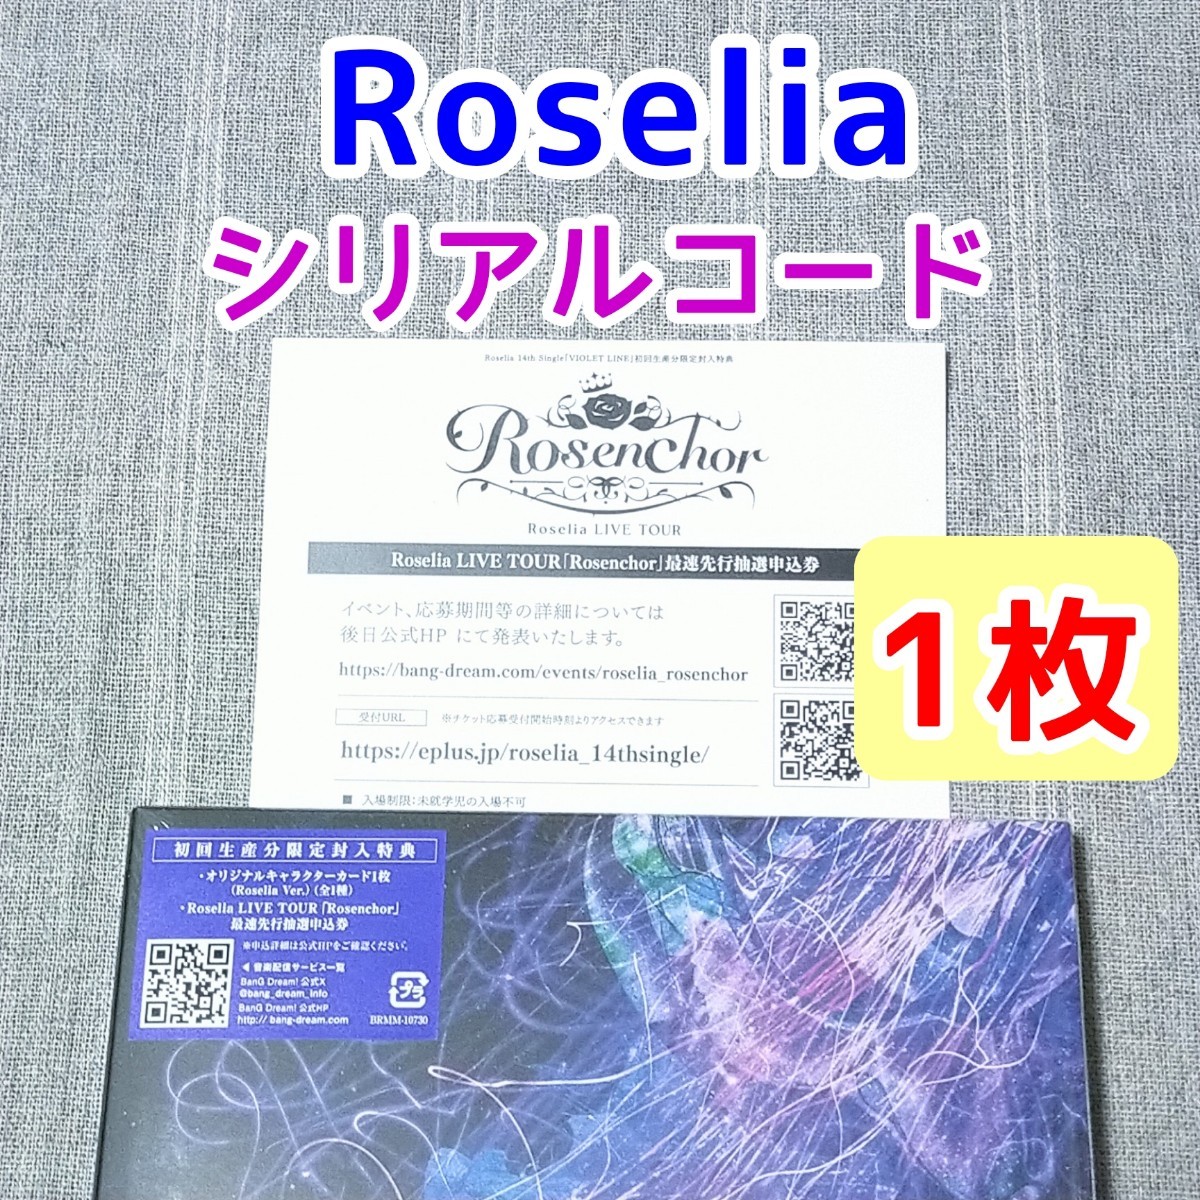 1枚 シリアルコード Roselia VIOLET LINE CD特典★BanG Dream バンドリ ロゼリア ライブ LIVE コンサート_画像1